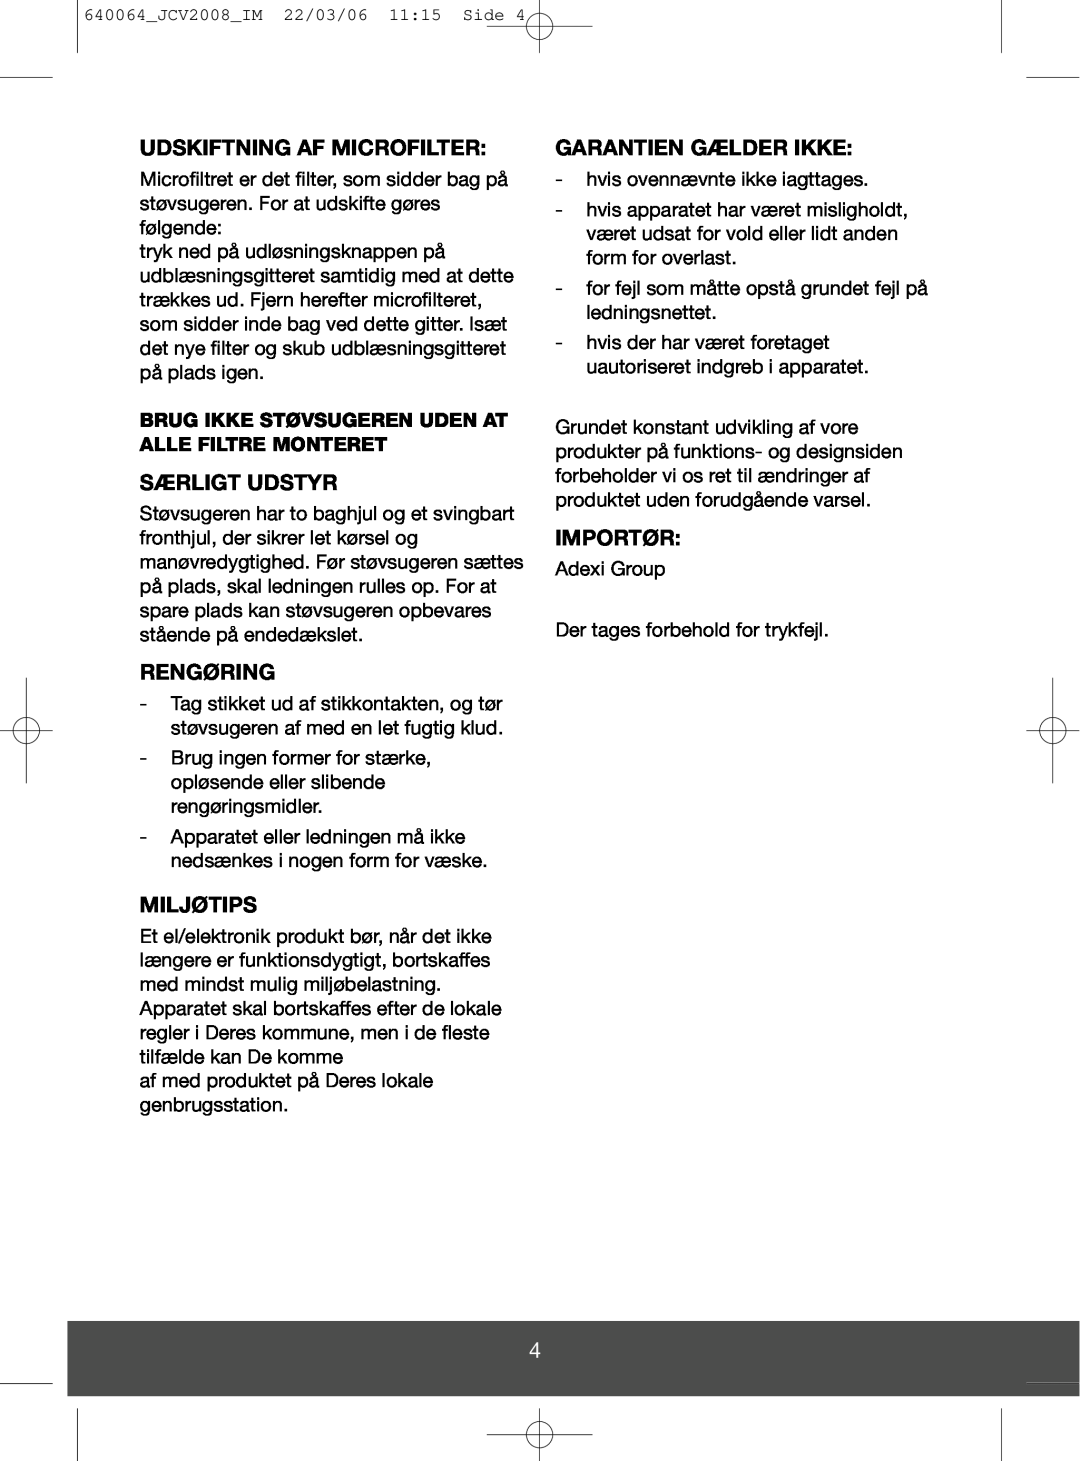 Melissa 640-123 manual Udskiftning Af Microfilter, Særligt Udstyr, Rengøring, Miljøtips, Garantien Gælder Ikke, Importør 